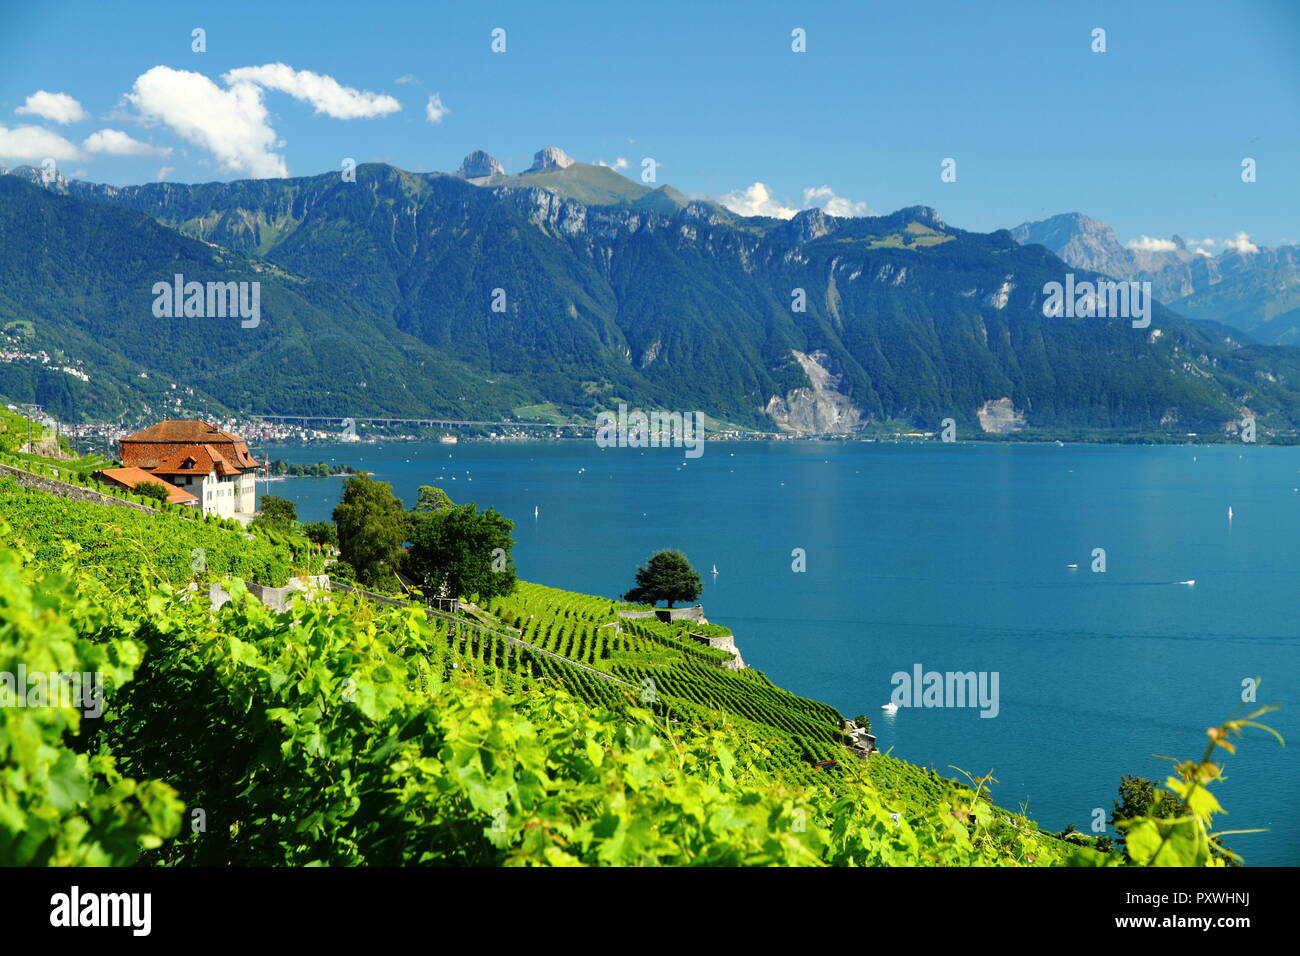 Chexbres, Weinort im Schweizer Kanton Waadt, Schweiz. Wunderschöne Aussicht  auf den Genfer See Stockfotografie - Alamy